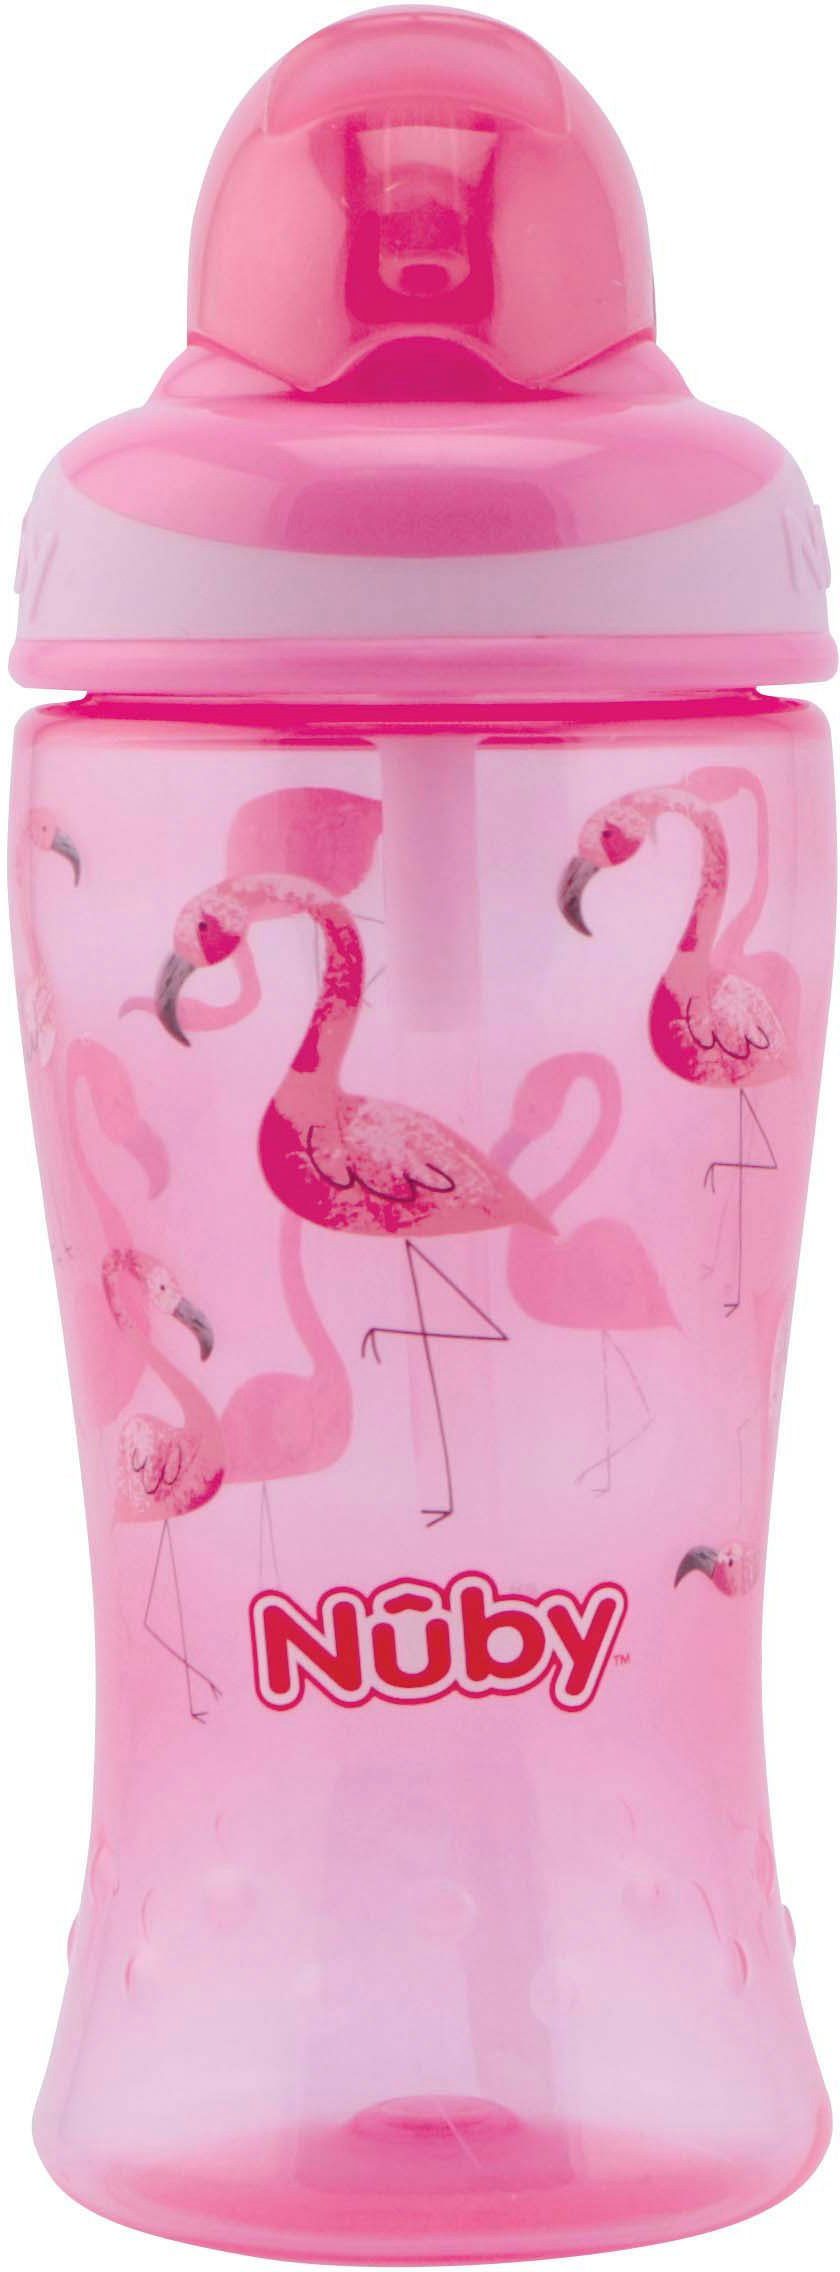 Trinkflasche Nuby pink